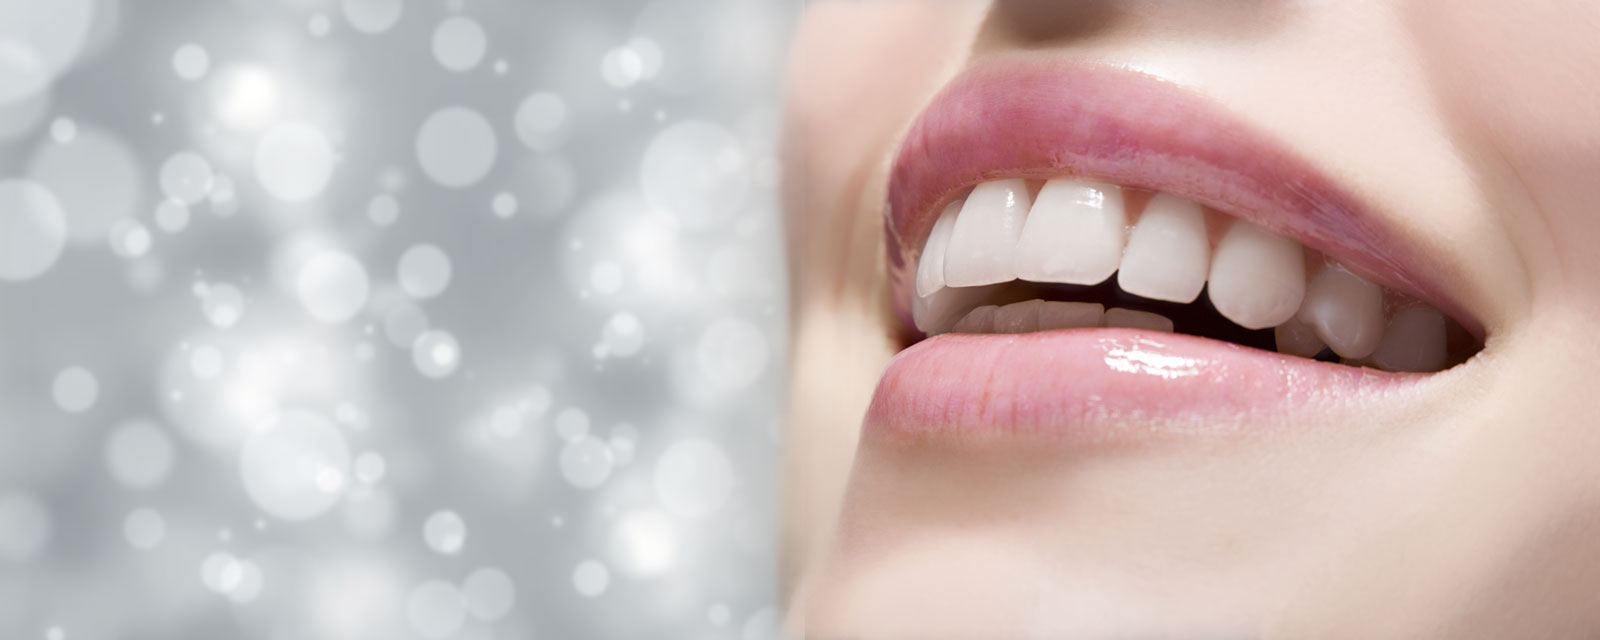 Mundhygiene bei Zahnersatz